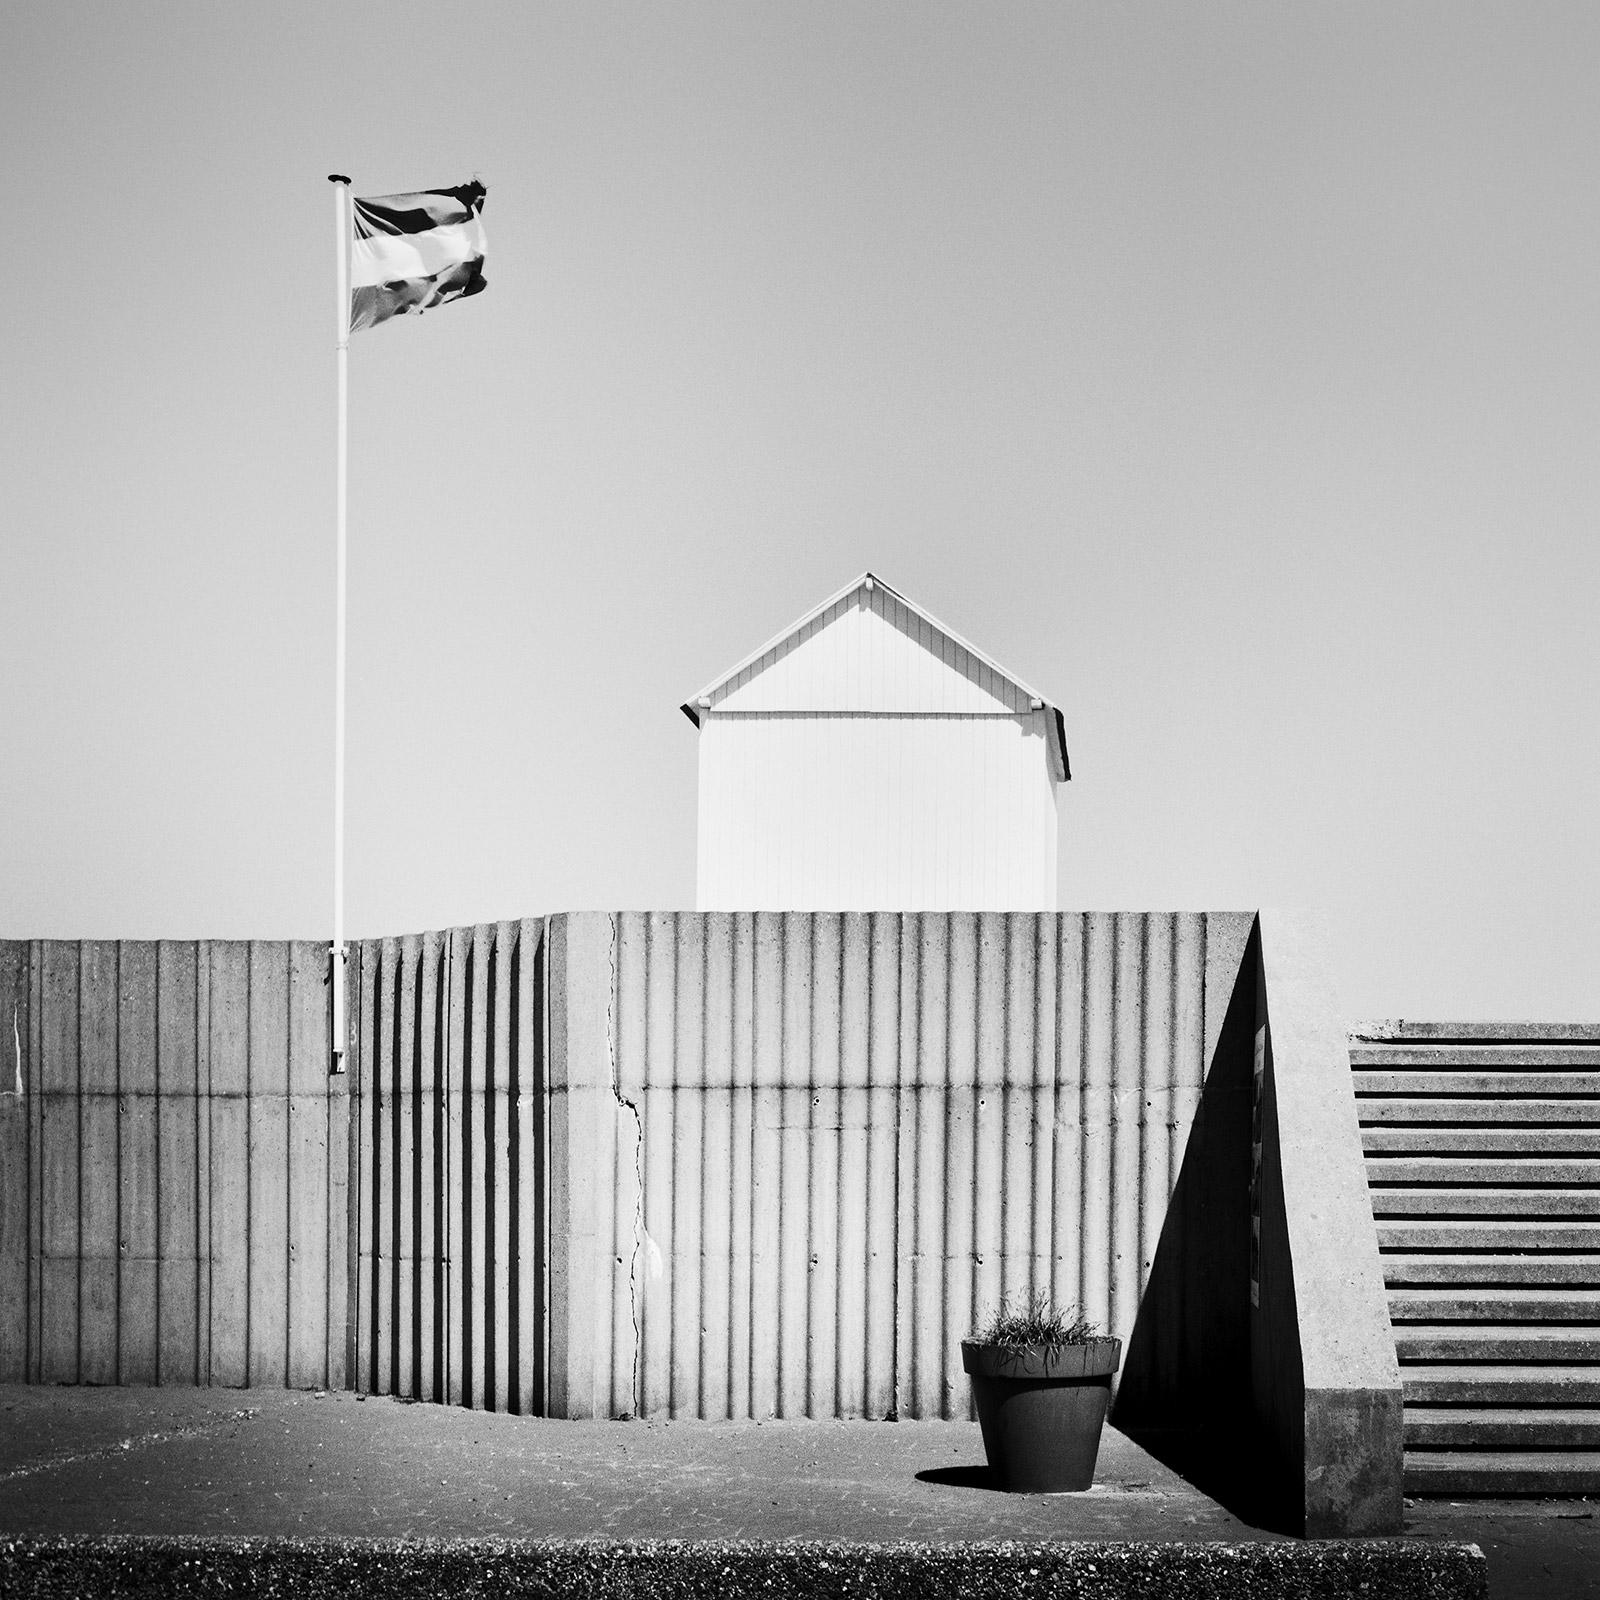 Black and White Photograph Gerald Berghammer - Beach Huts, Hauts-de-France, photographie noir et blanc, tirage d'art, paysage